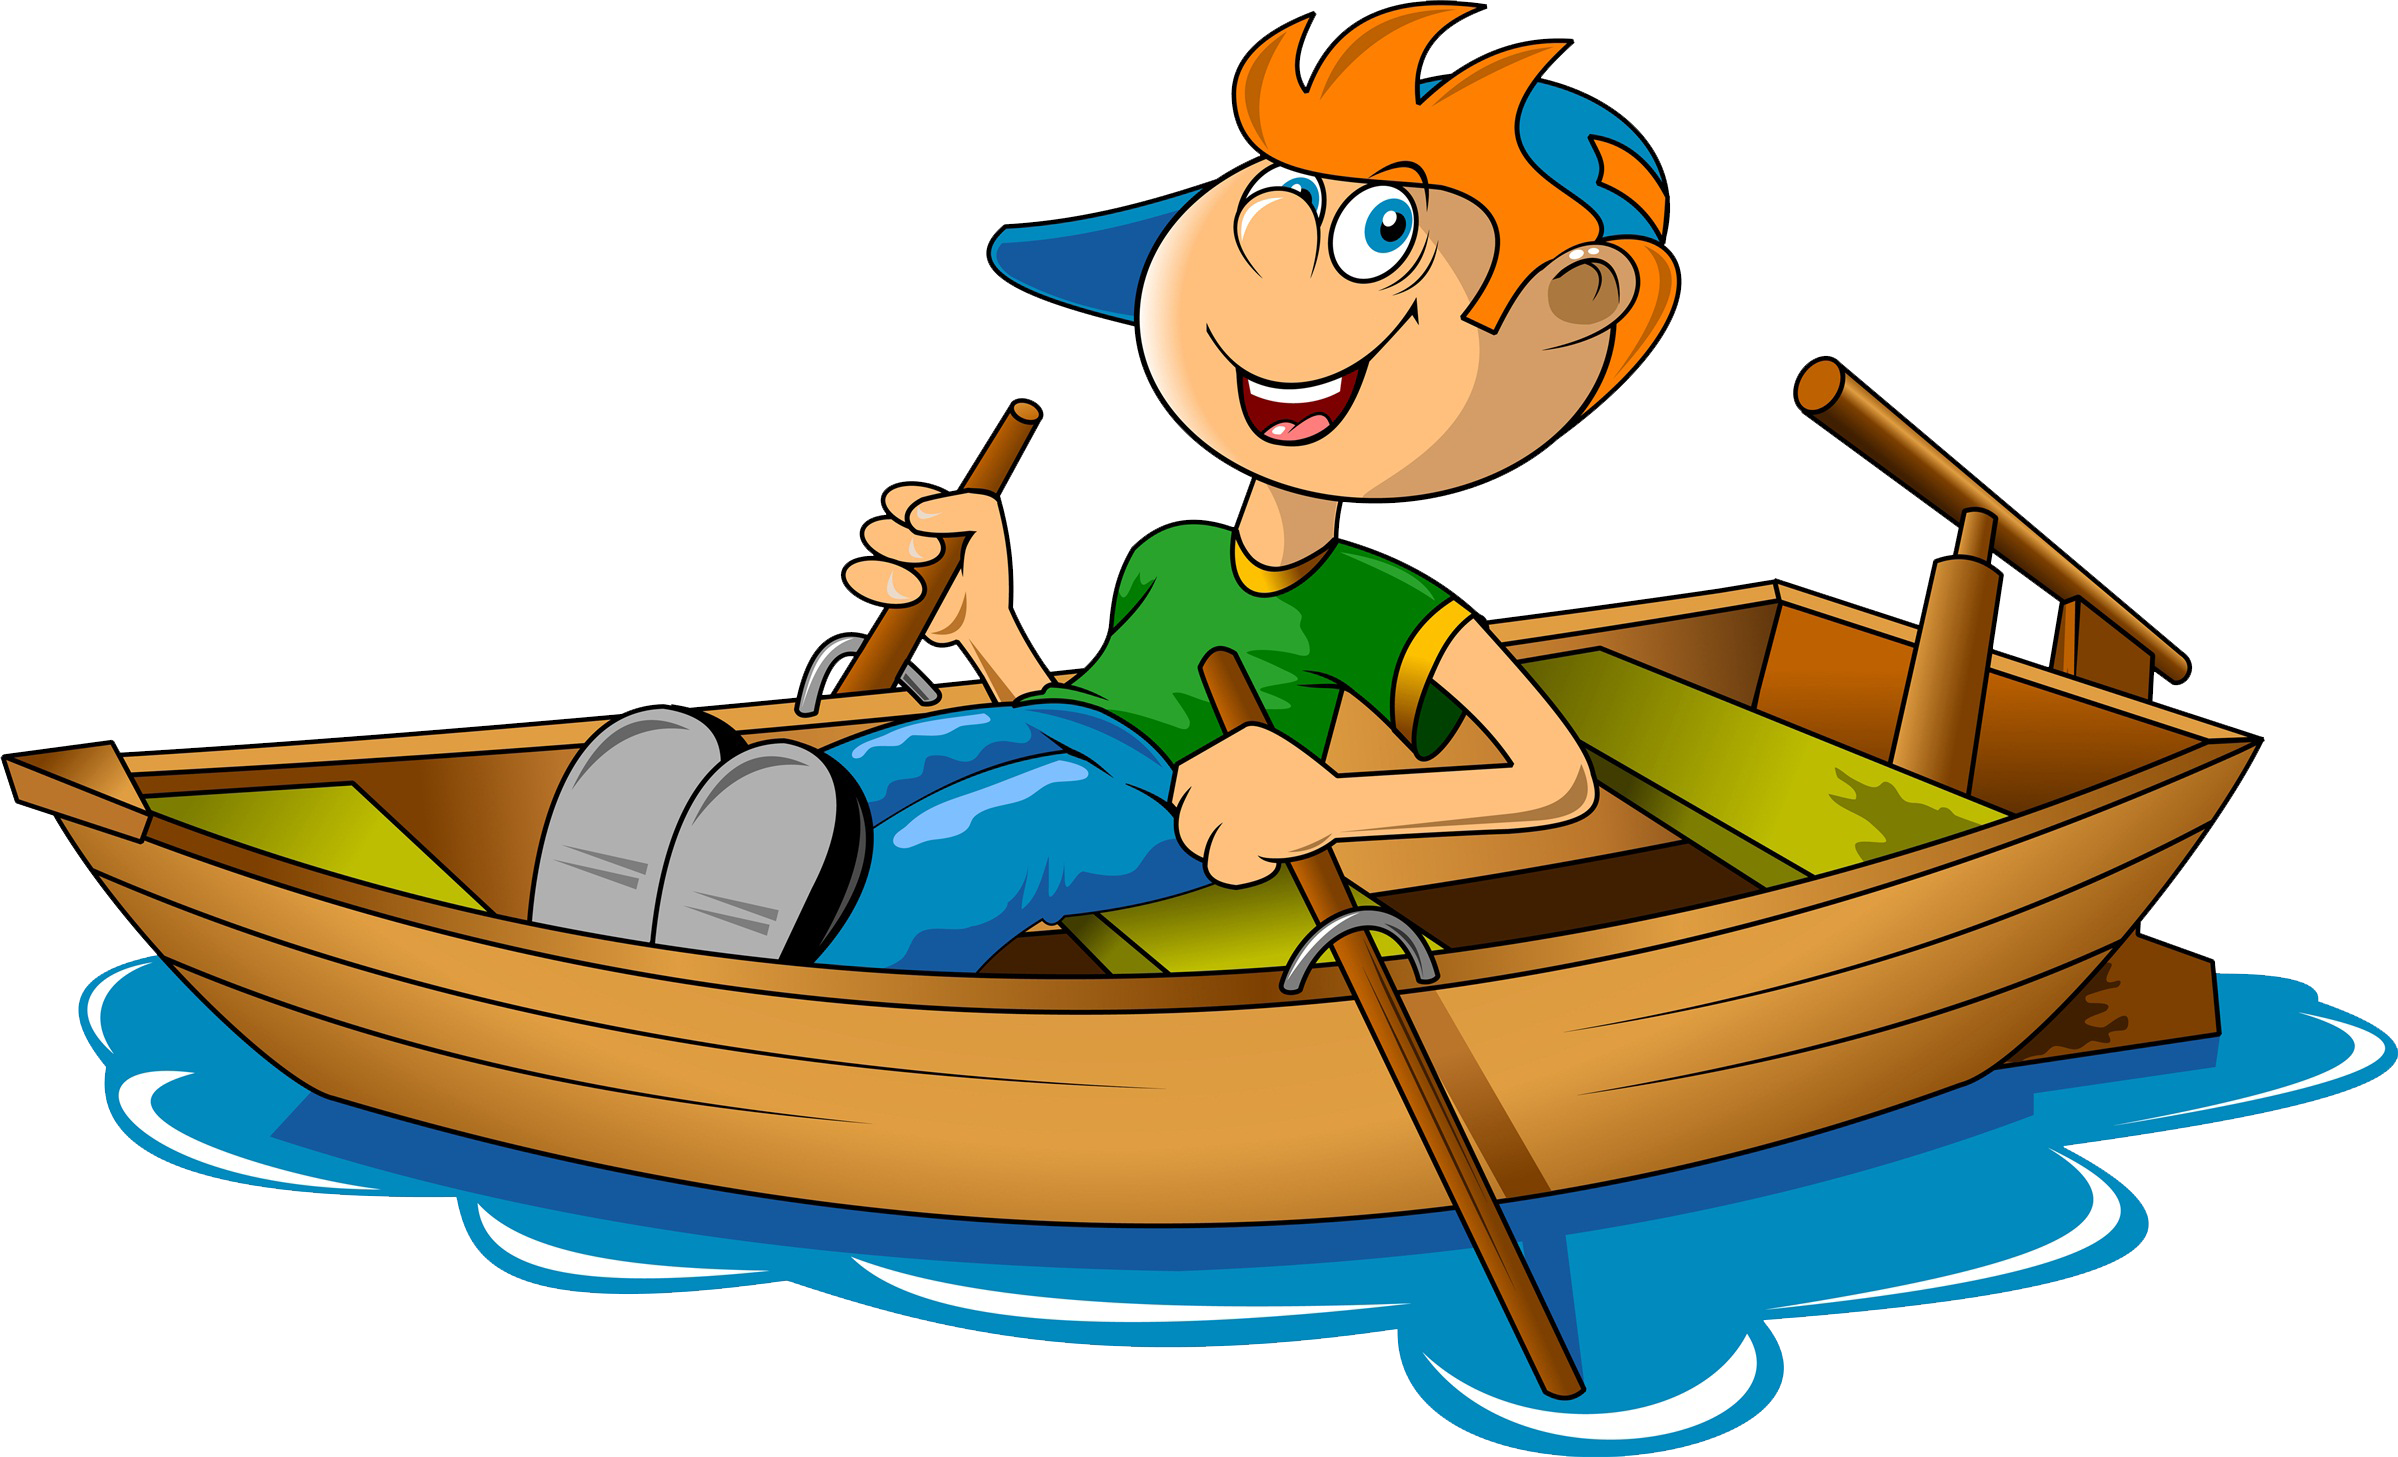 A Cartoon Of A Boy In A Boat